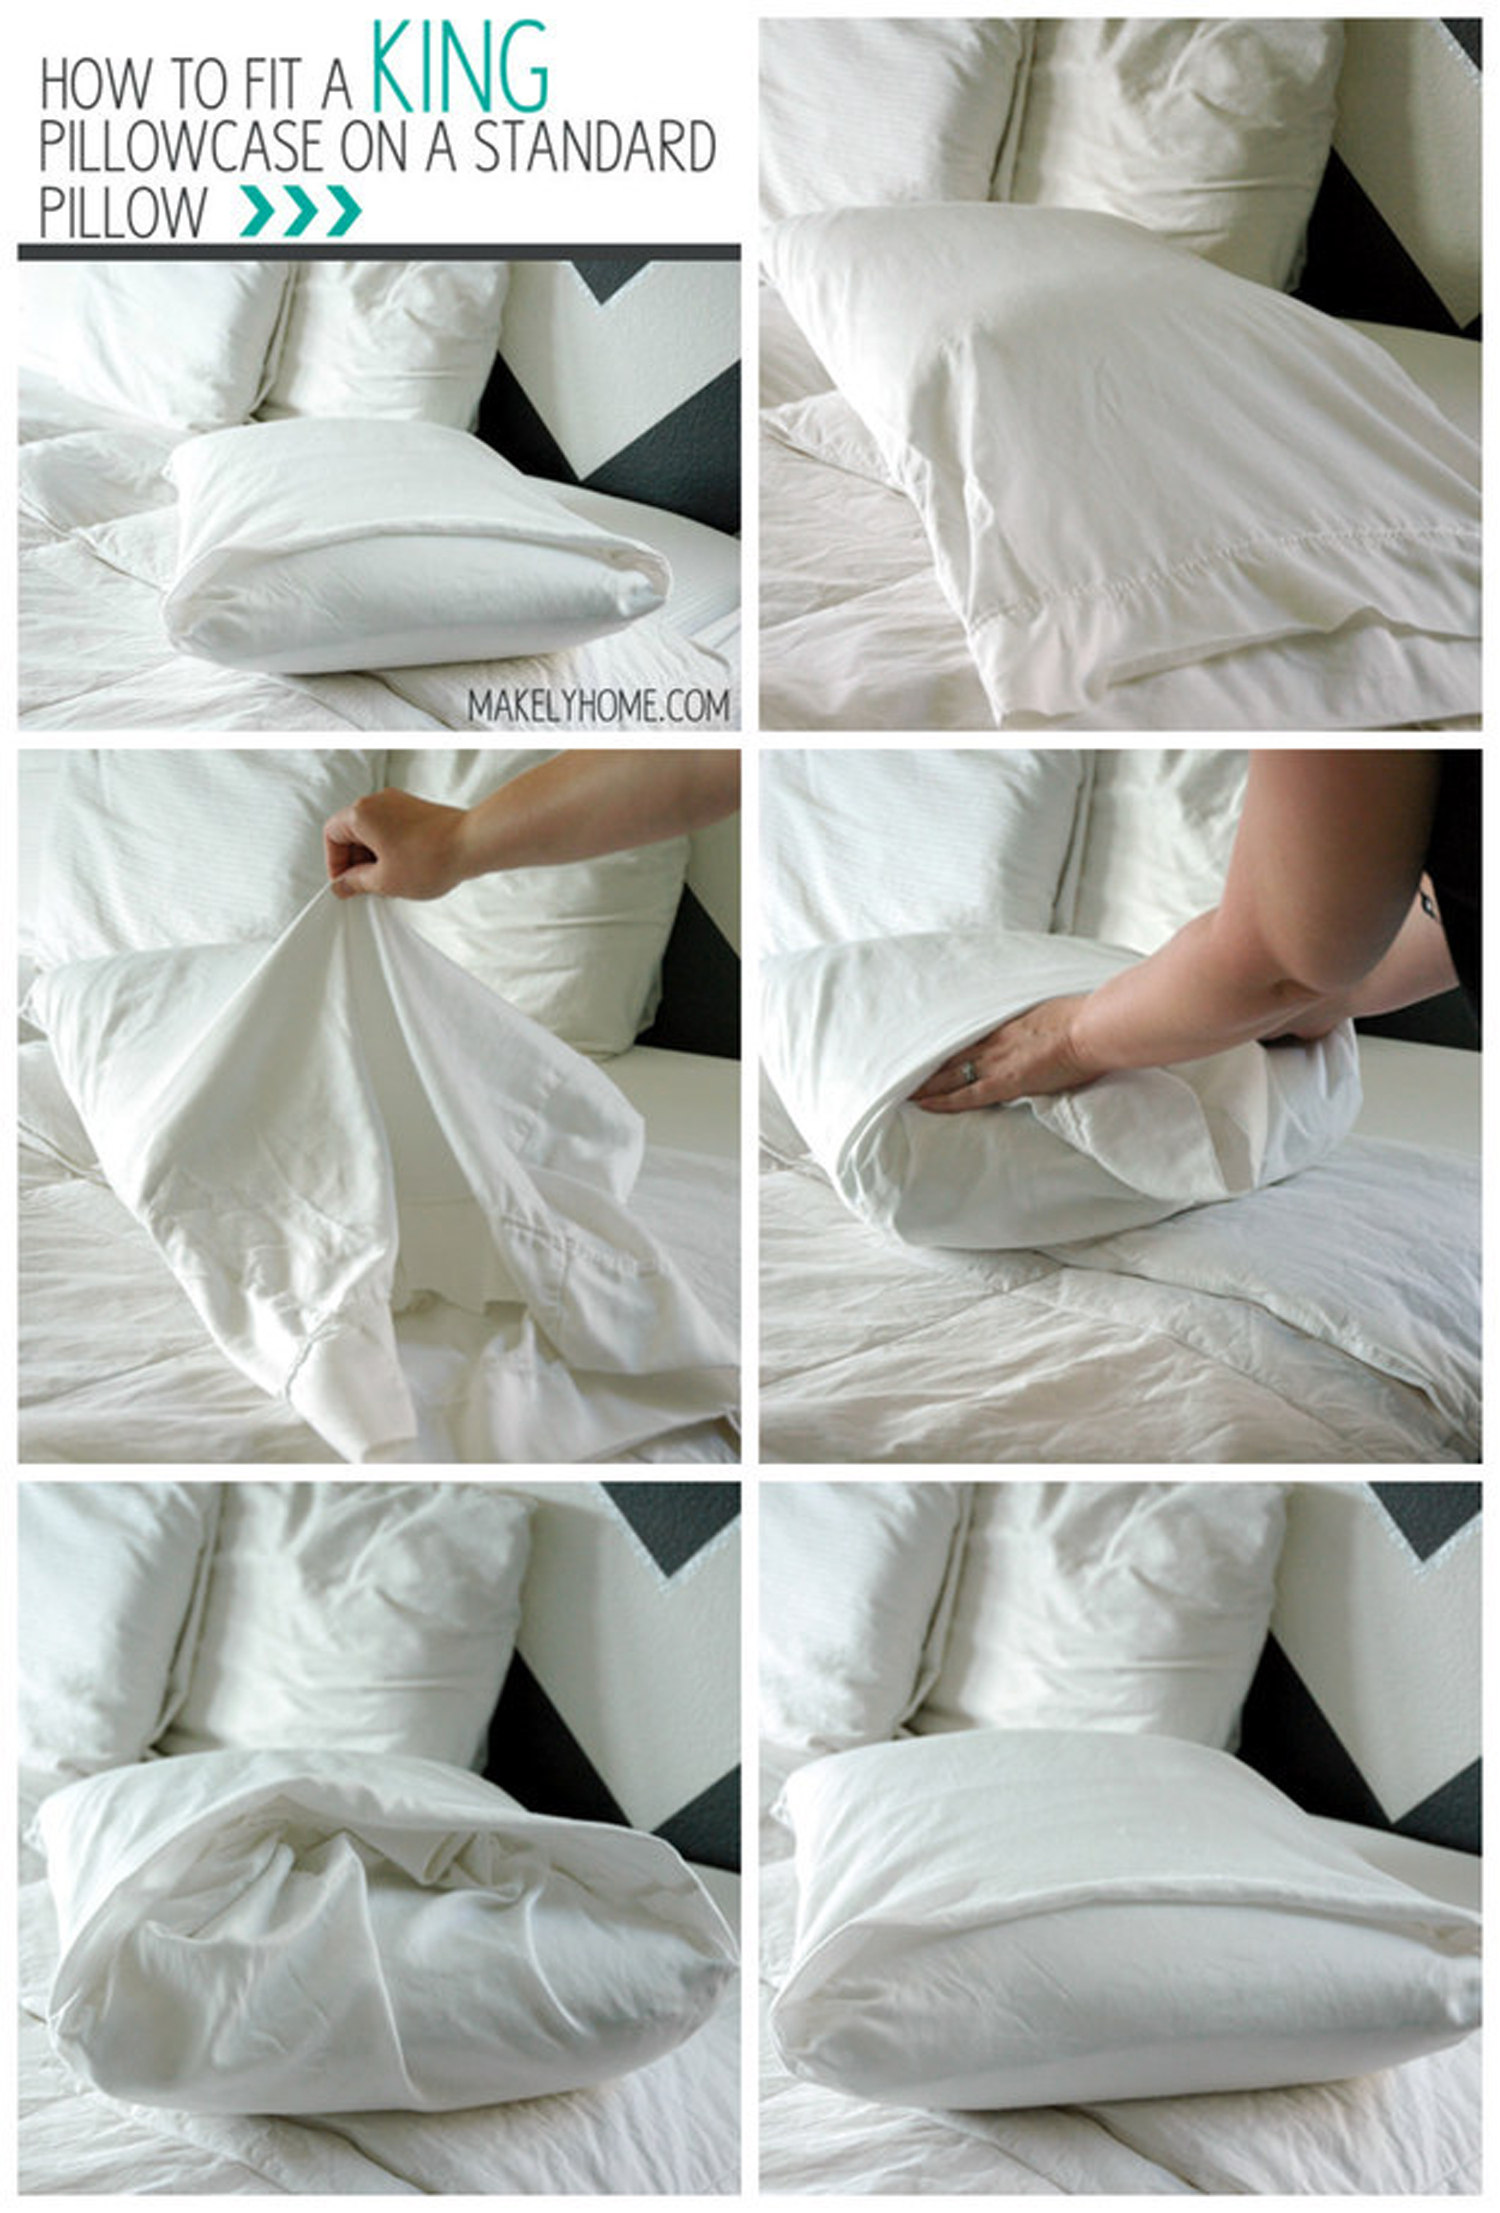 Заправить большую наволочку в маленькую подушку видео. Сложить одеяло компактно. Сложить постельное белье. Складываем постельное белье. Сложить постельное белье компактно.